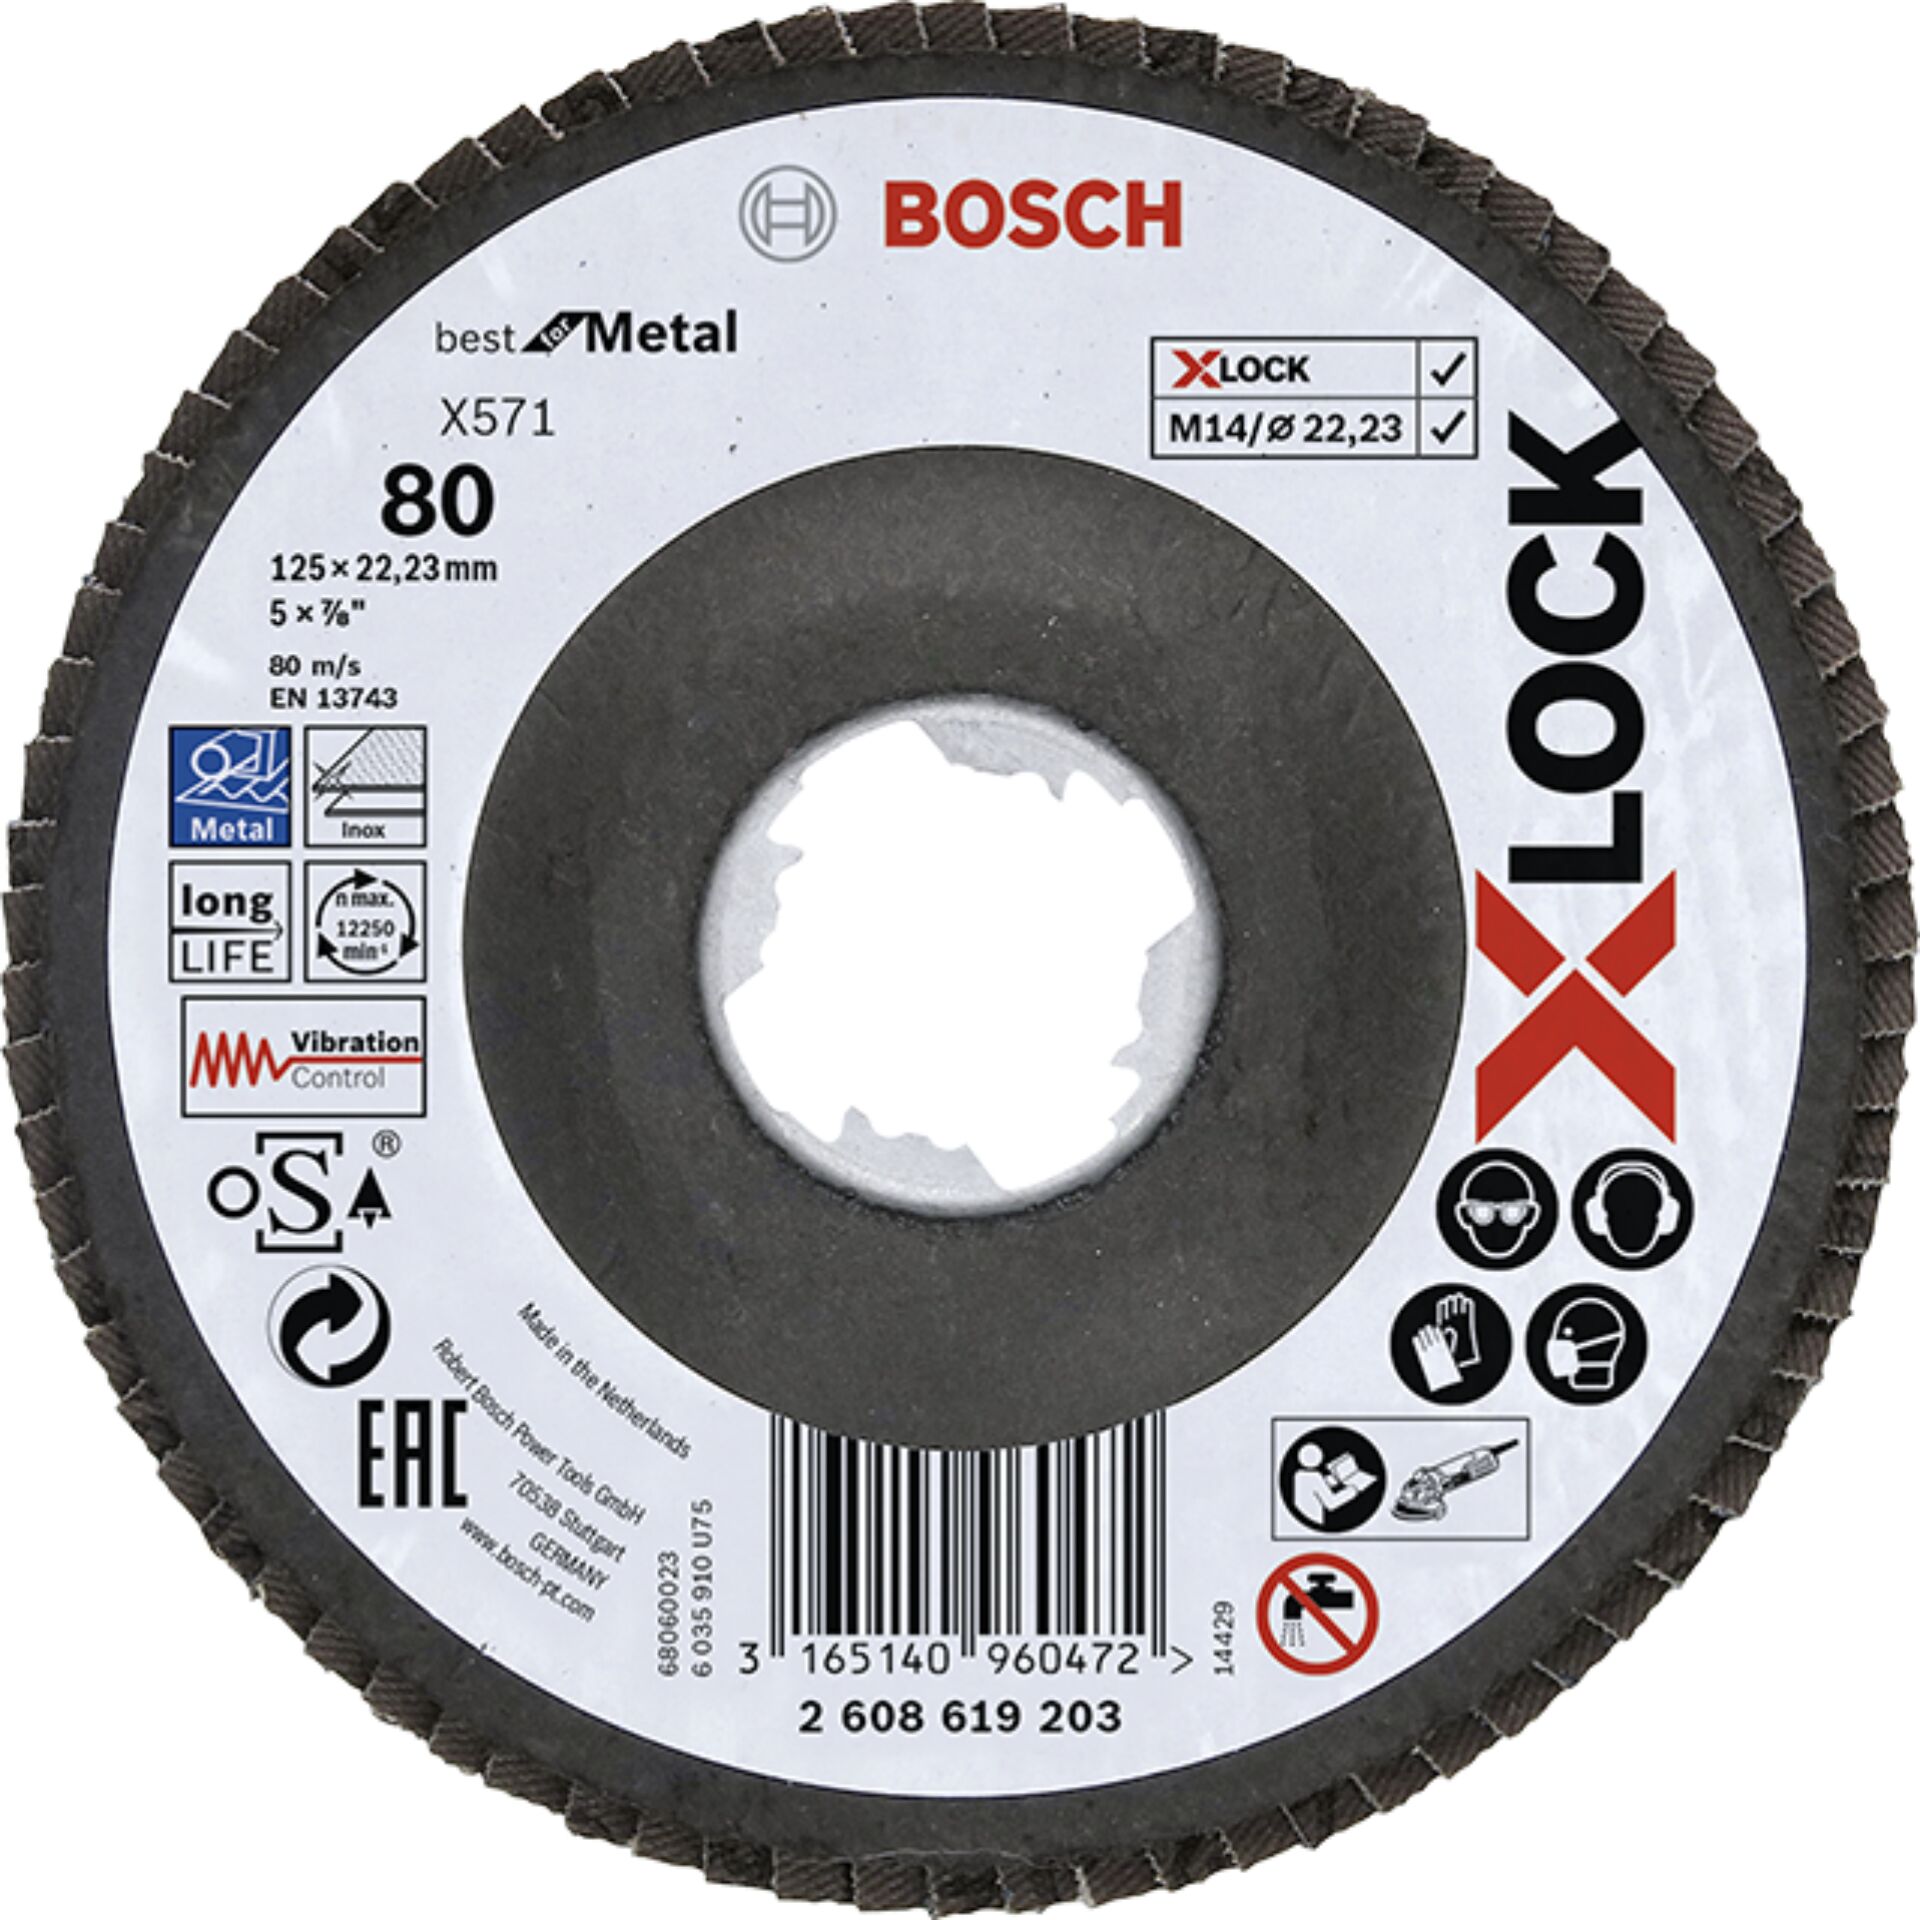 Bosch GWX 13-125 S kit smerigliatrice angolare